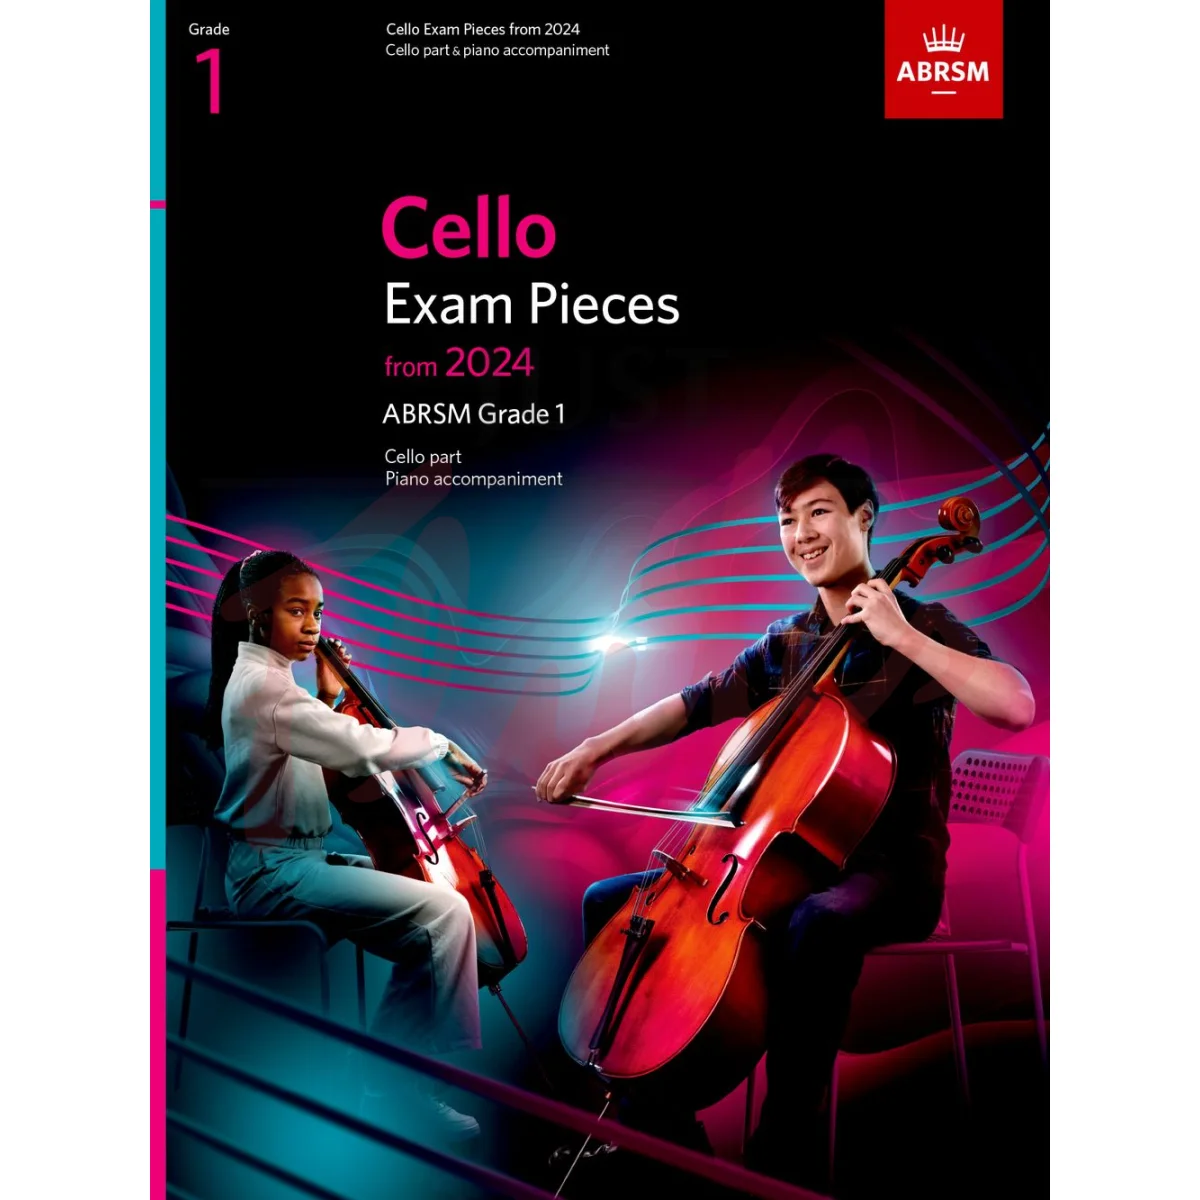 Cello Exam Pieces from 2024, Grade 1